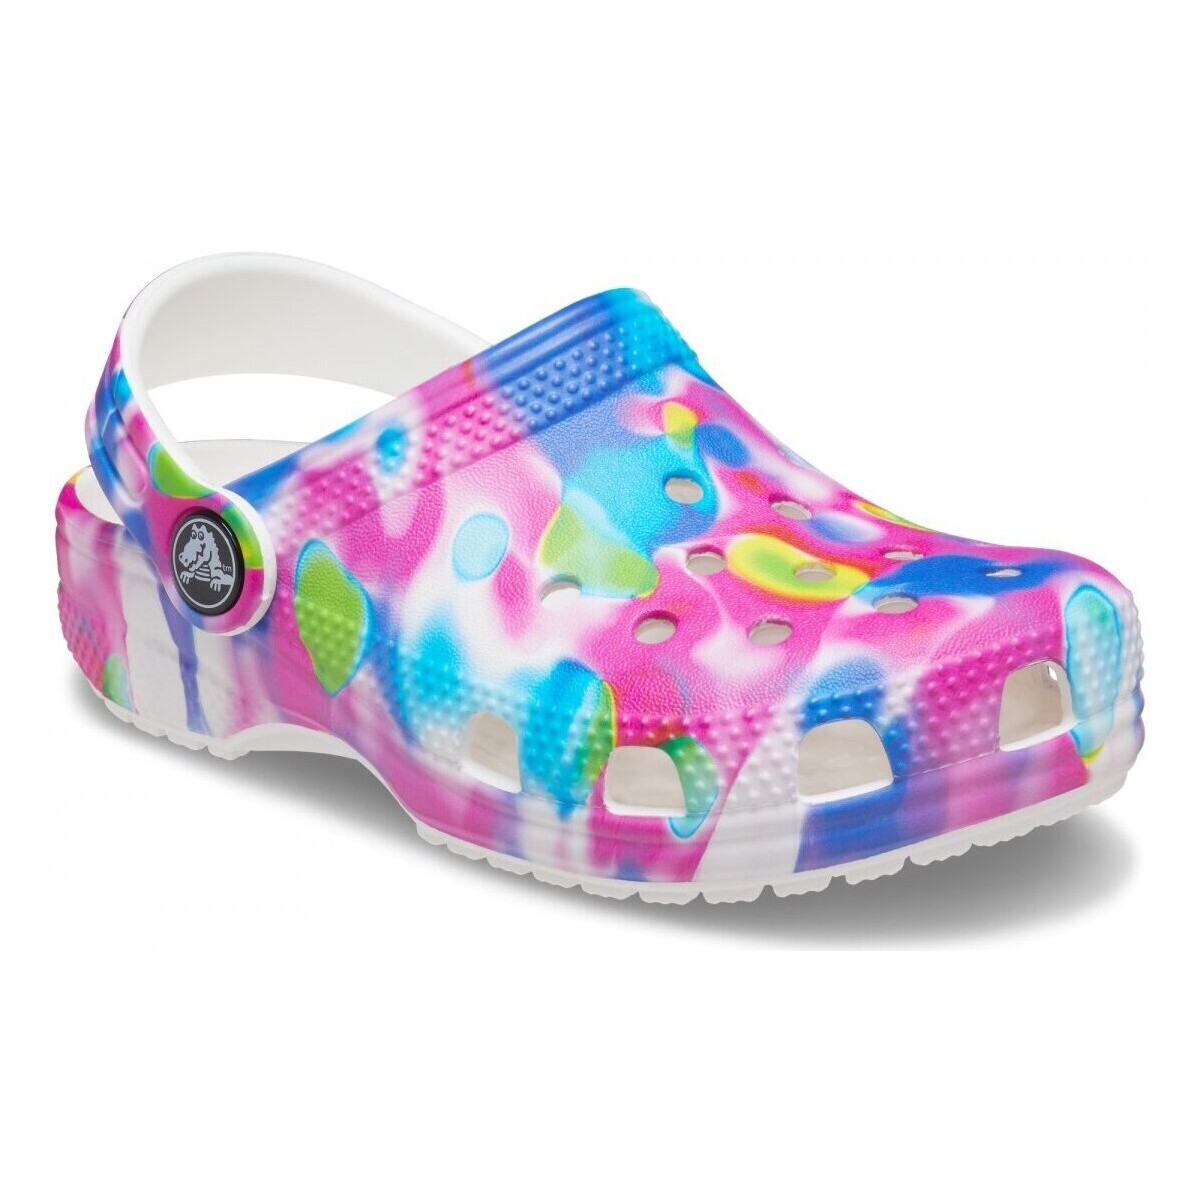 Sapatos Criança Sandálias Crocs CR.207588-PKWH Pink/white